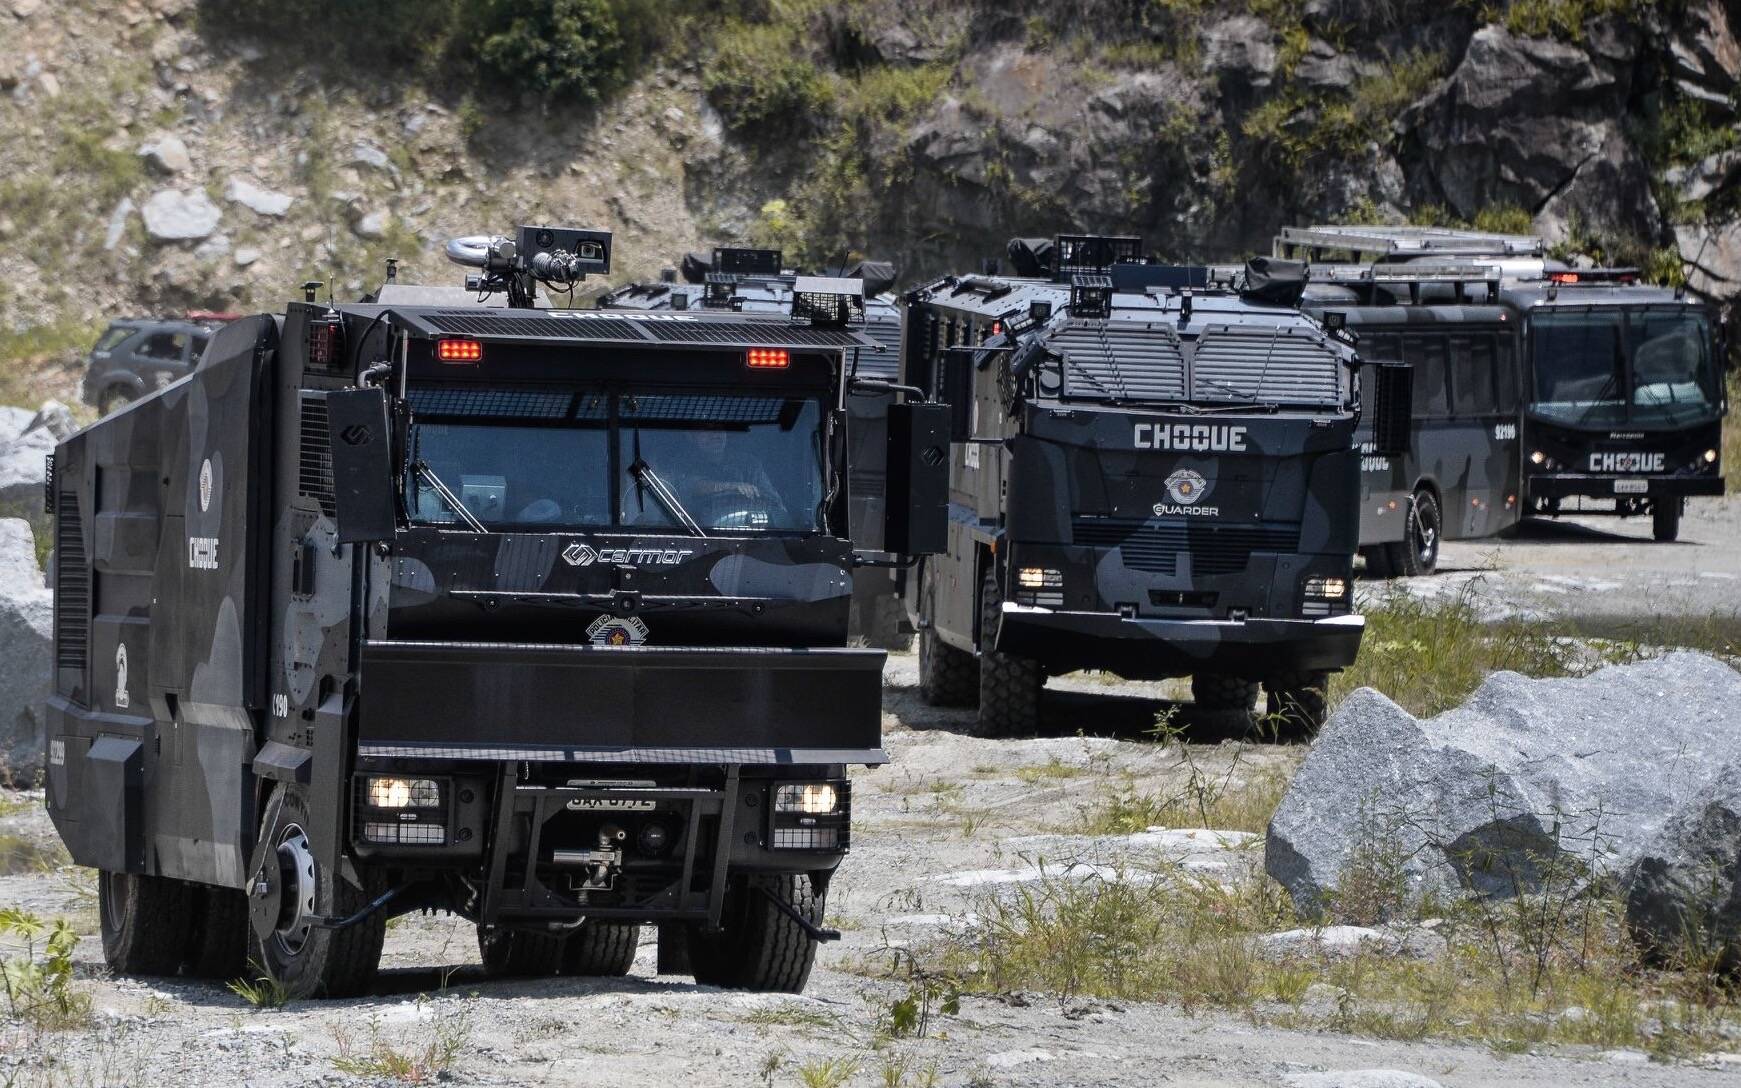 Segundo Batalhão de Choque - Polícia Militar do Estado de São Paulo. Foto: Major PM Luis Augusto Pacheco Ambar